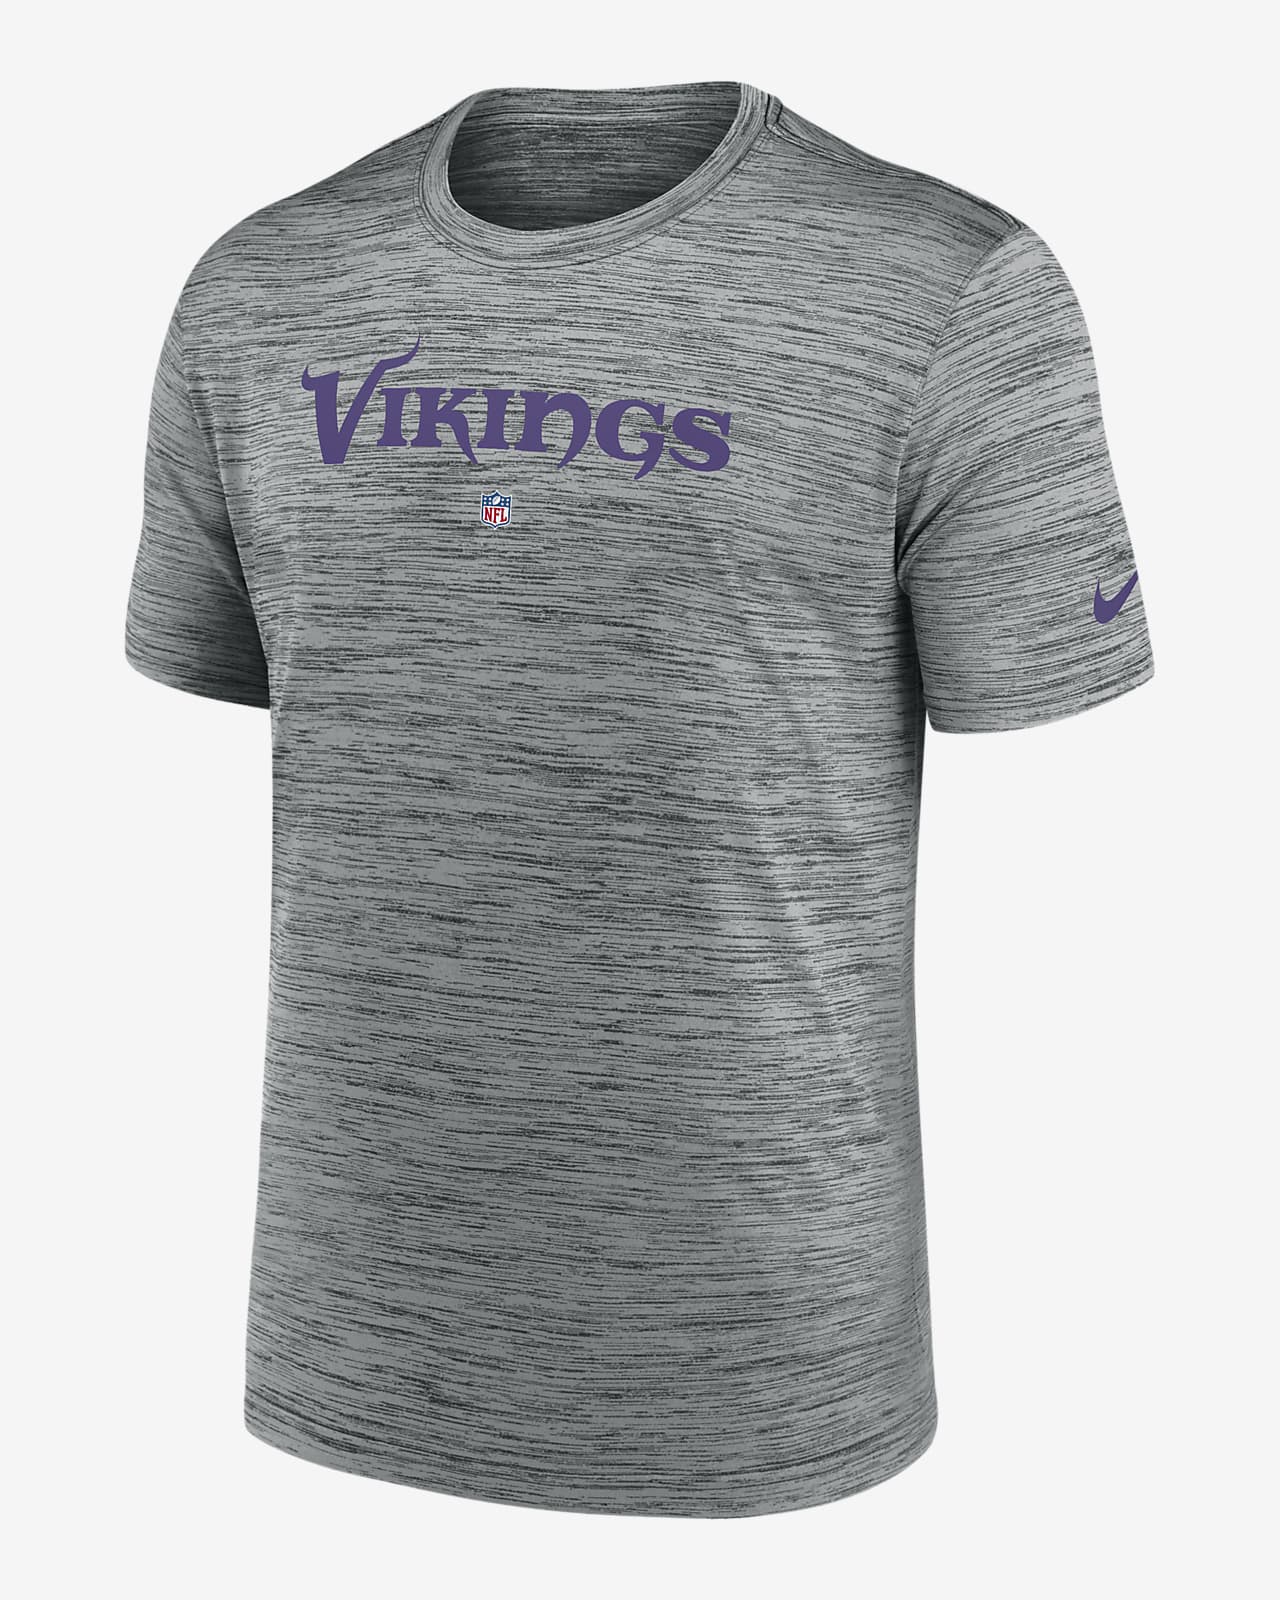 minnesota vikings shirts for men